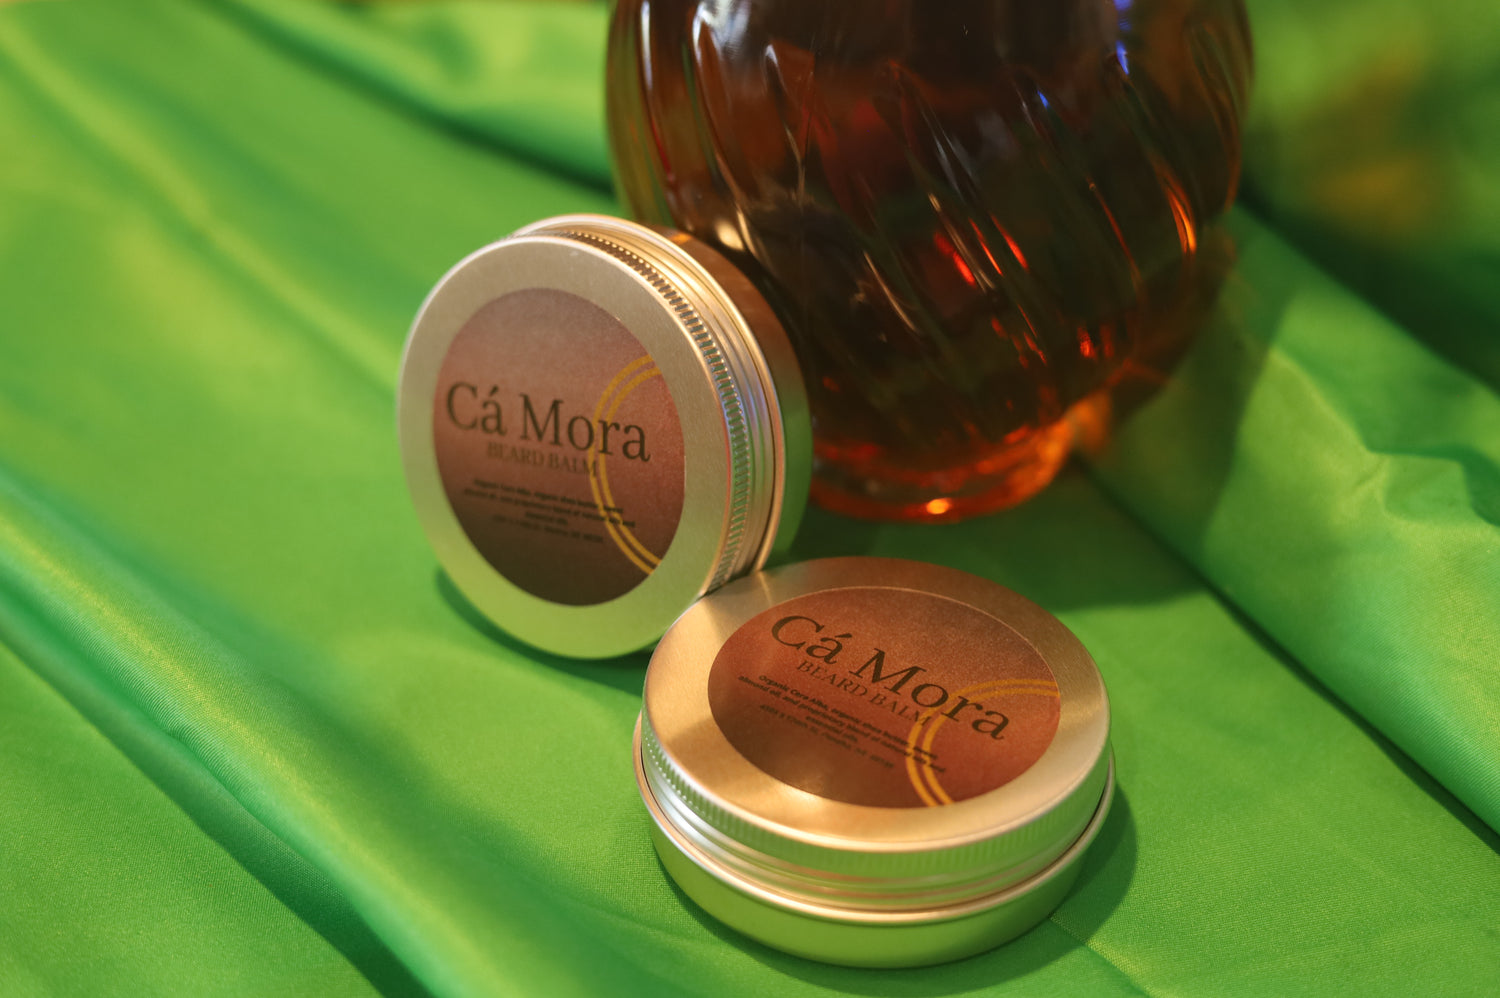 Ca'Mora beard balm made using organic ingredients.